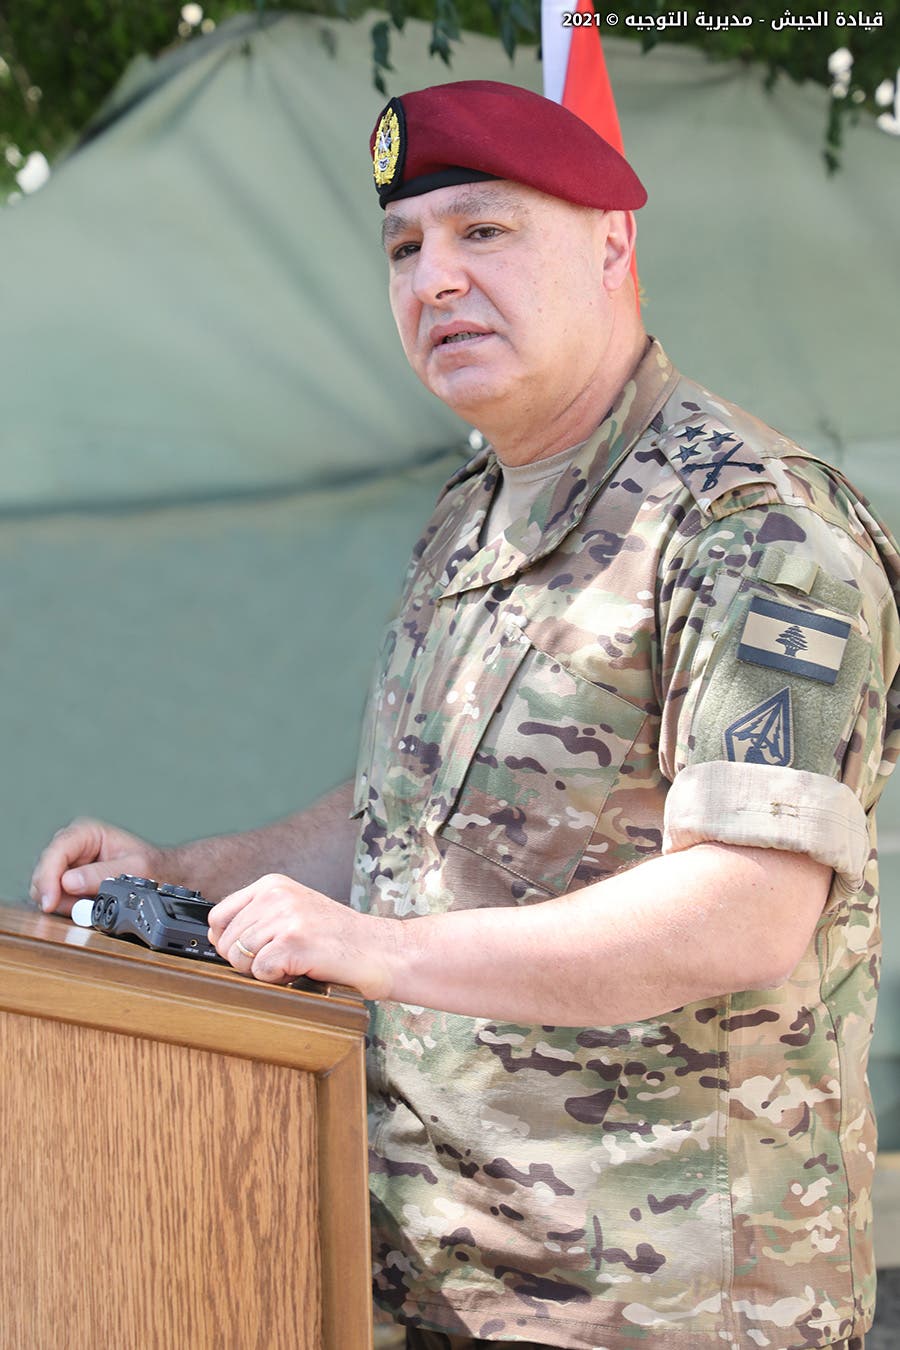 قائد الجيش اللبناني الجنرال جوزاف عون يتحدث إلى عسكريين في البقاع اليوم